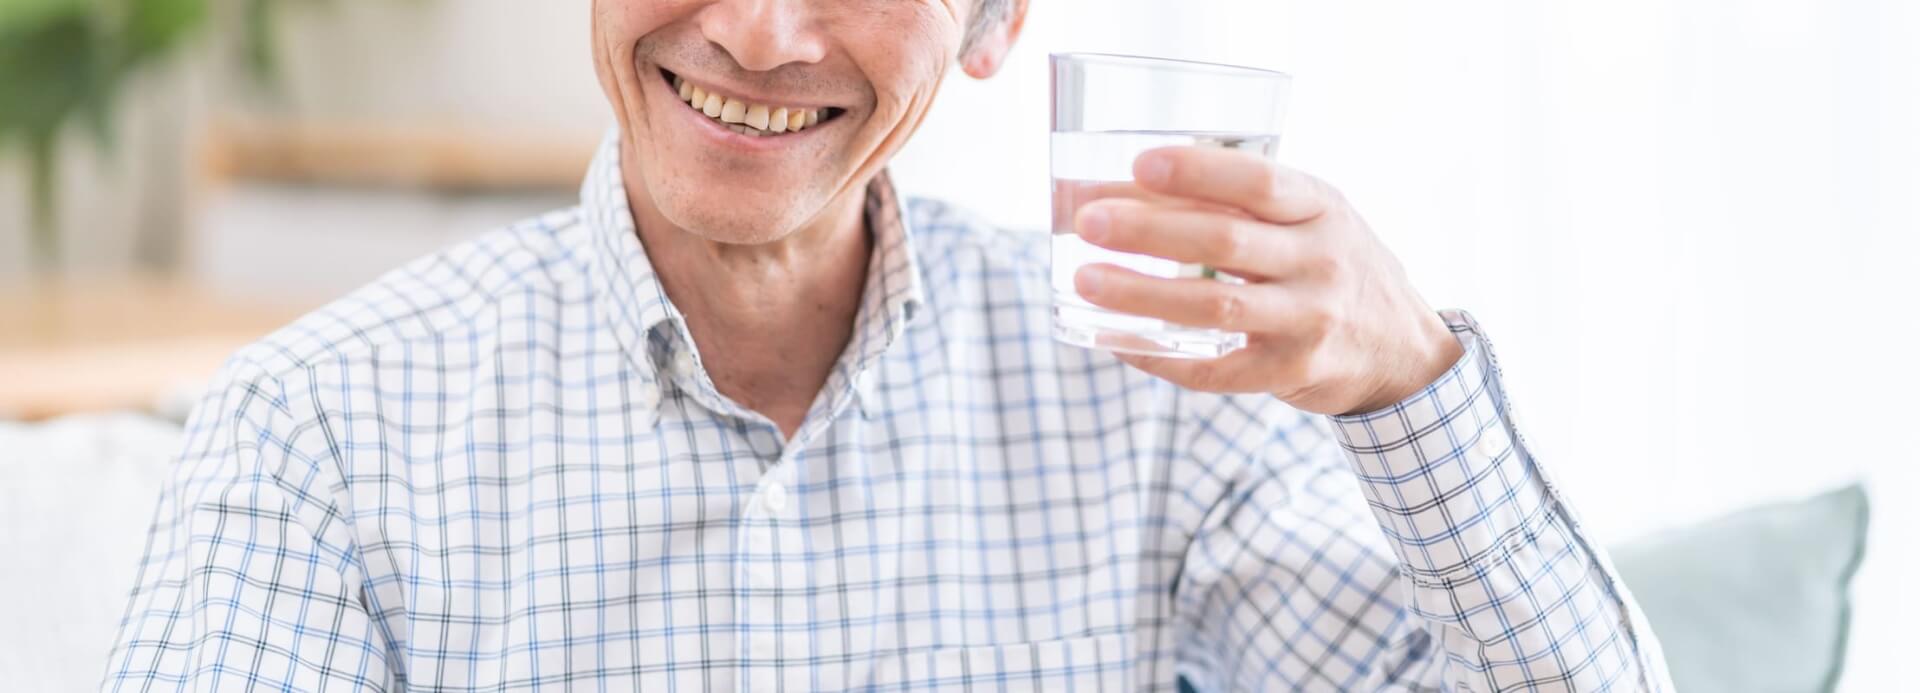 Hombre sonriendo con un vaso de agua y bicarbonato de sodio en la mano.